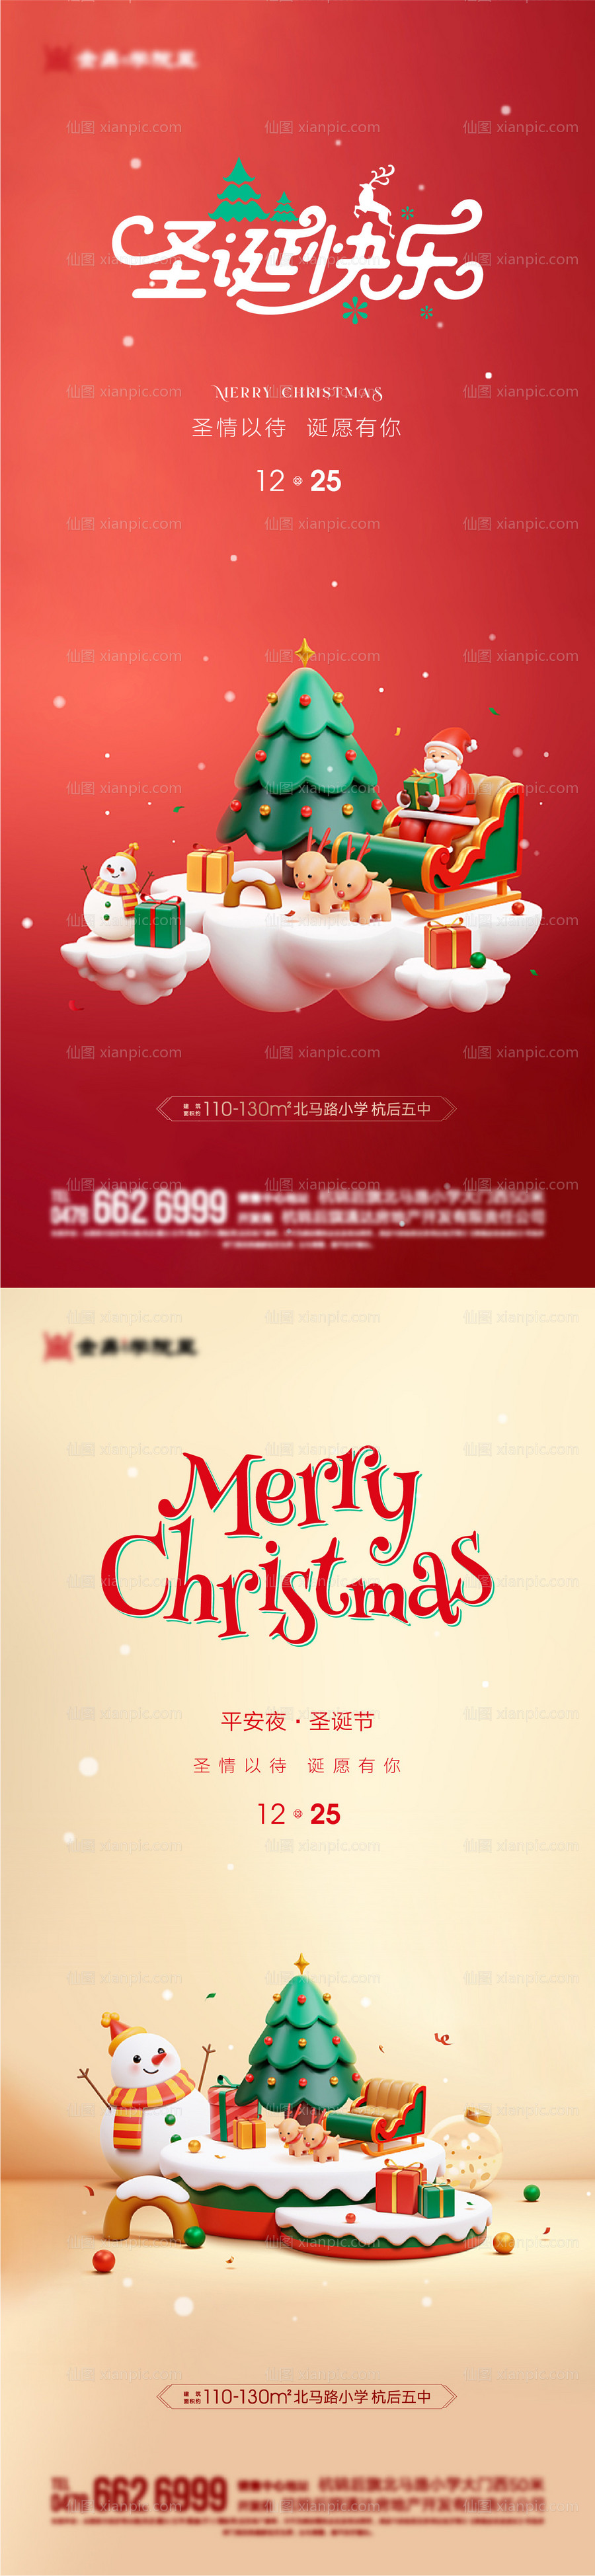 素材乐-圣诞节平安夜系列海报